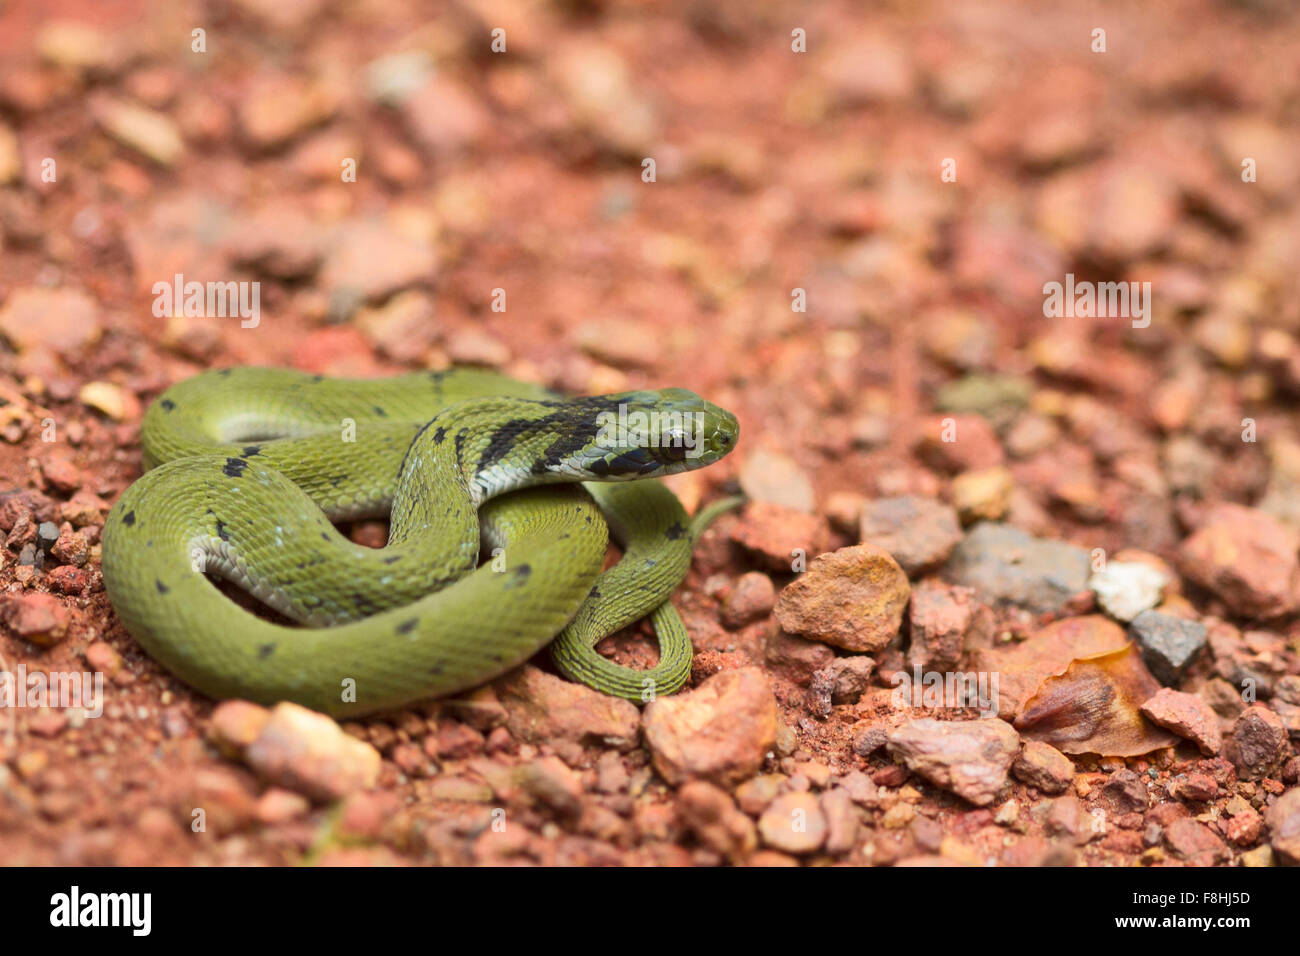 Grüne Keelback juvenile, Macropisthodon Plumbicolor eine nicht giftige Schlange, die in der indischen Westghats endemisch ist. Stockfoto